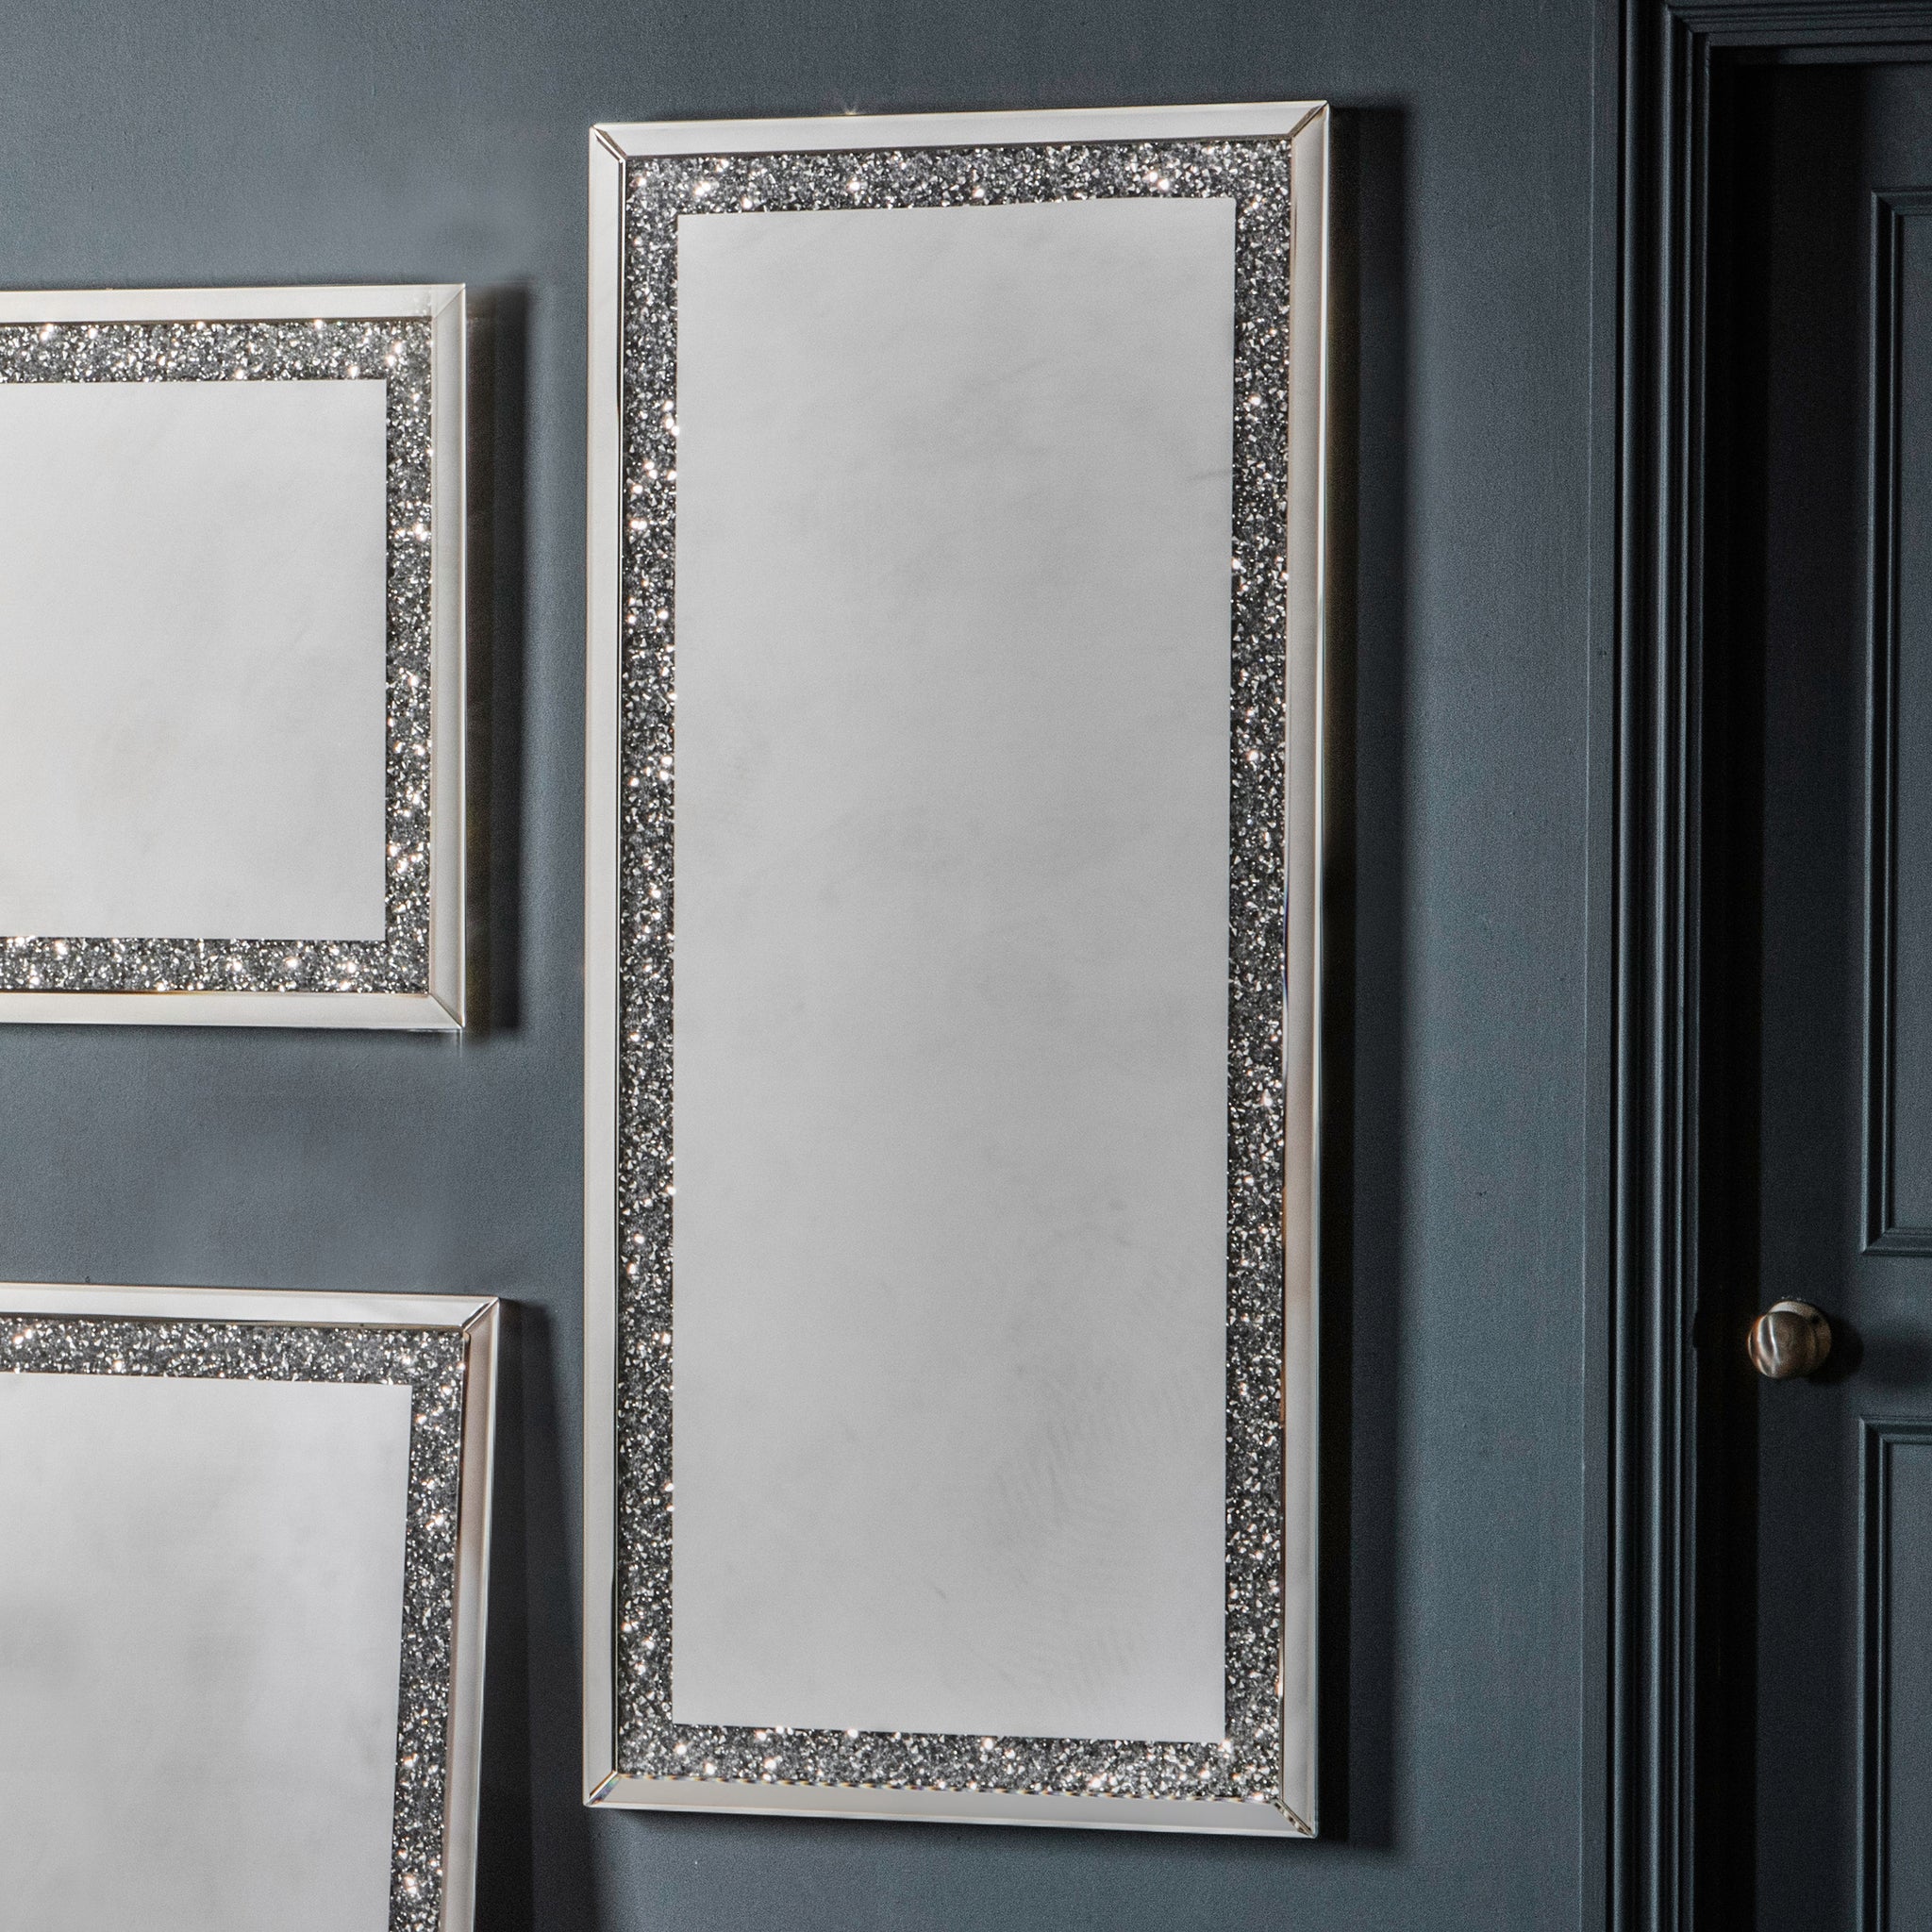 Westmore Silver Mirror 60 x 135 cm